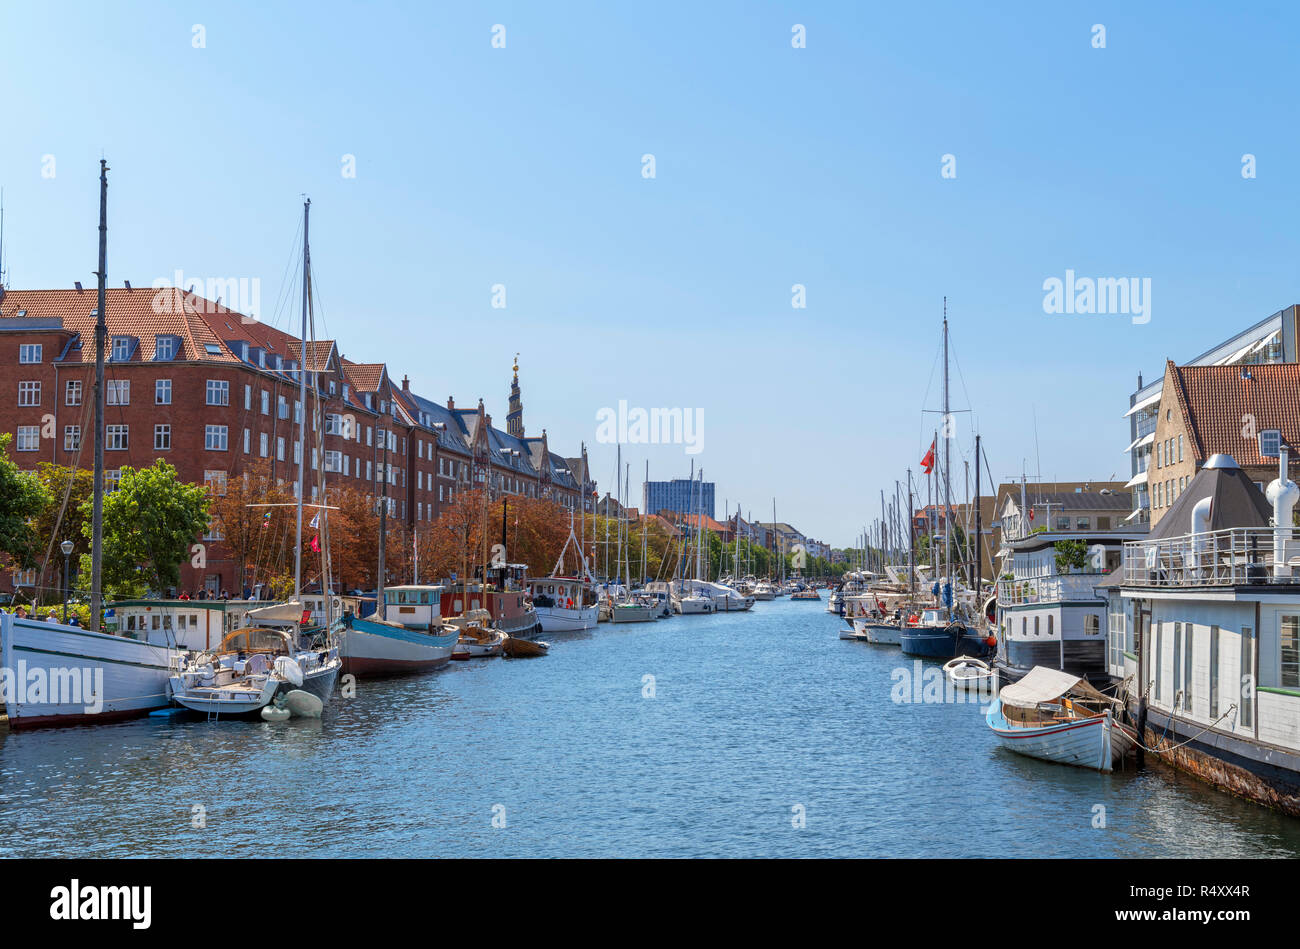 Yachts amarrés dans un canal en vue de Christianshavn Butterfly 3-way Bridge, Copenhague, Danemark, Nouvelle-Zélande Banque D'Images